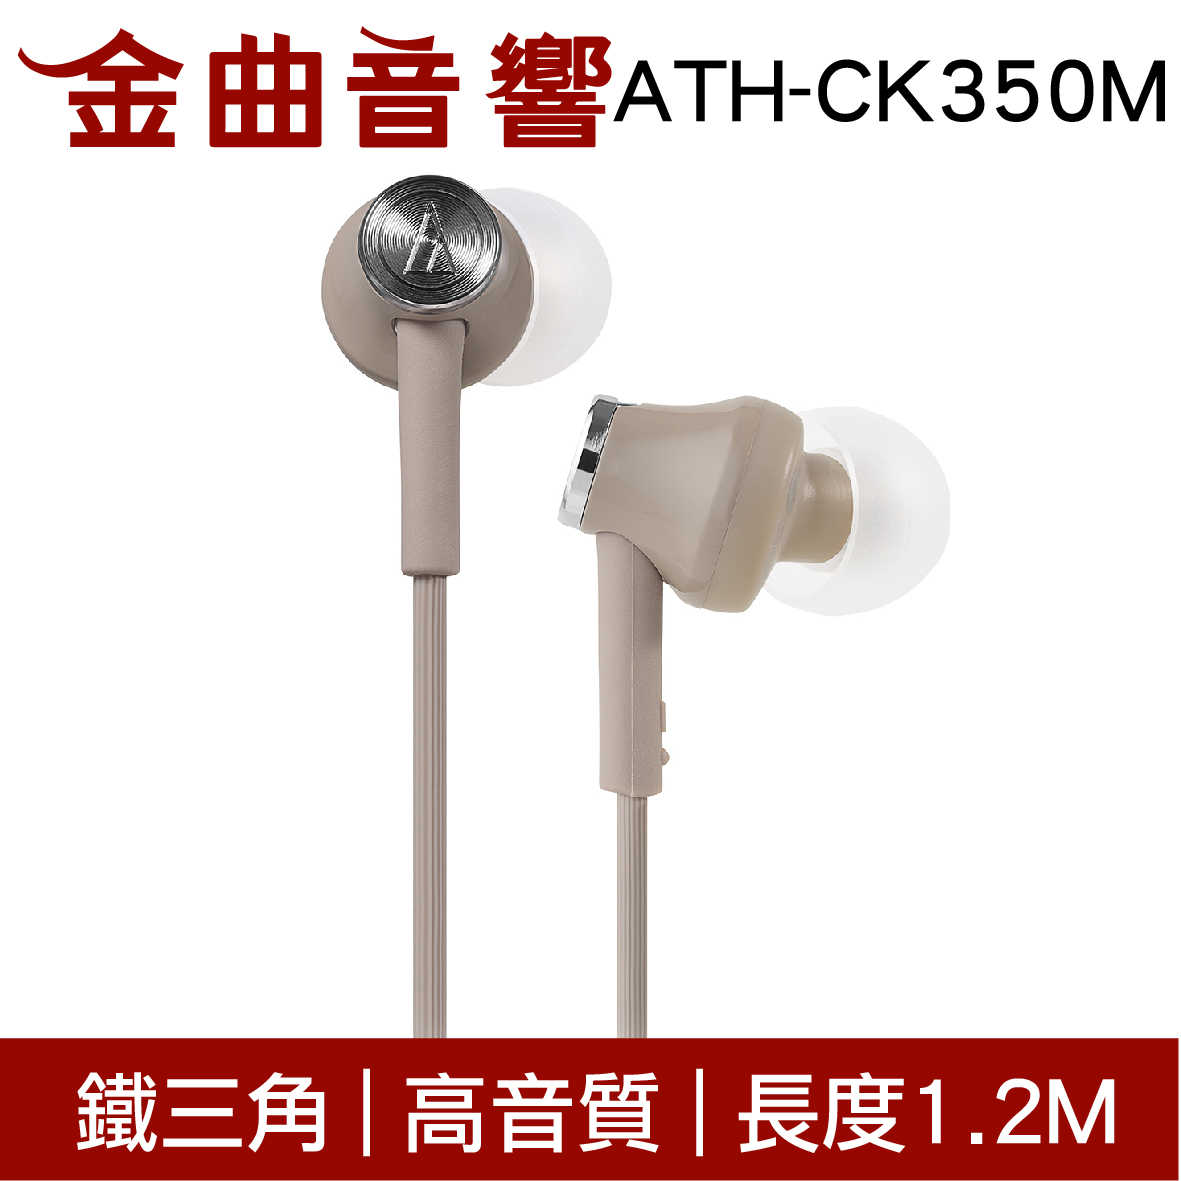 鐵三角 ATH-CK350M 多色可選 高音質 耳道式 耳機 | 金曲音響